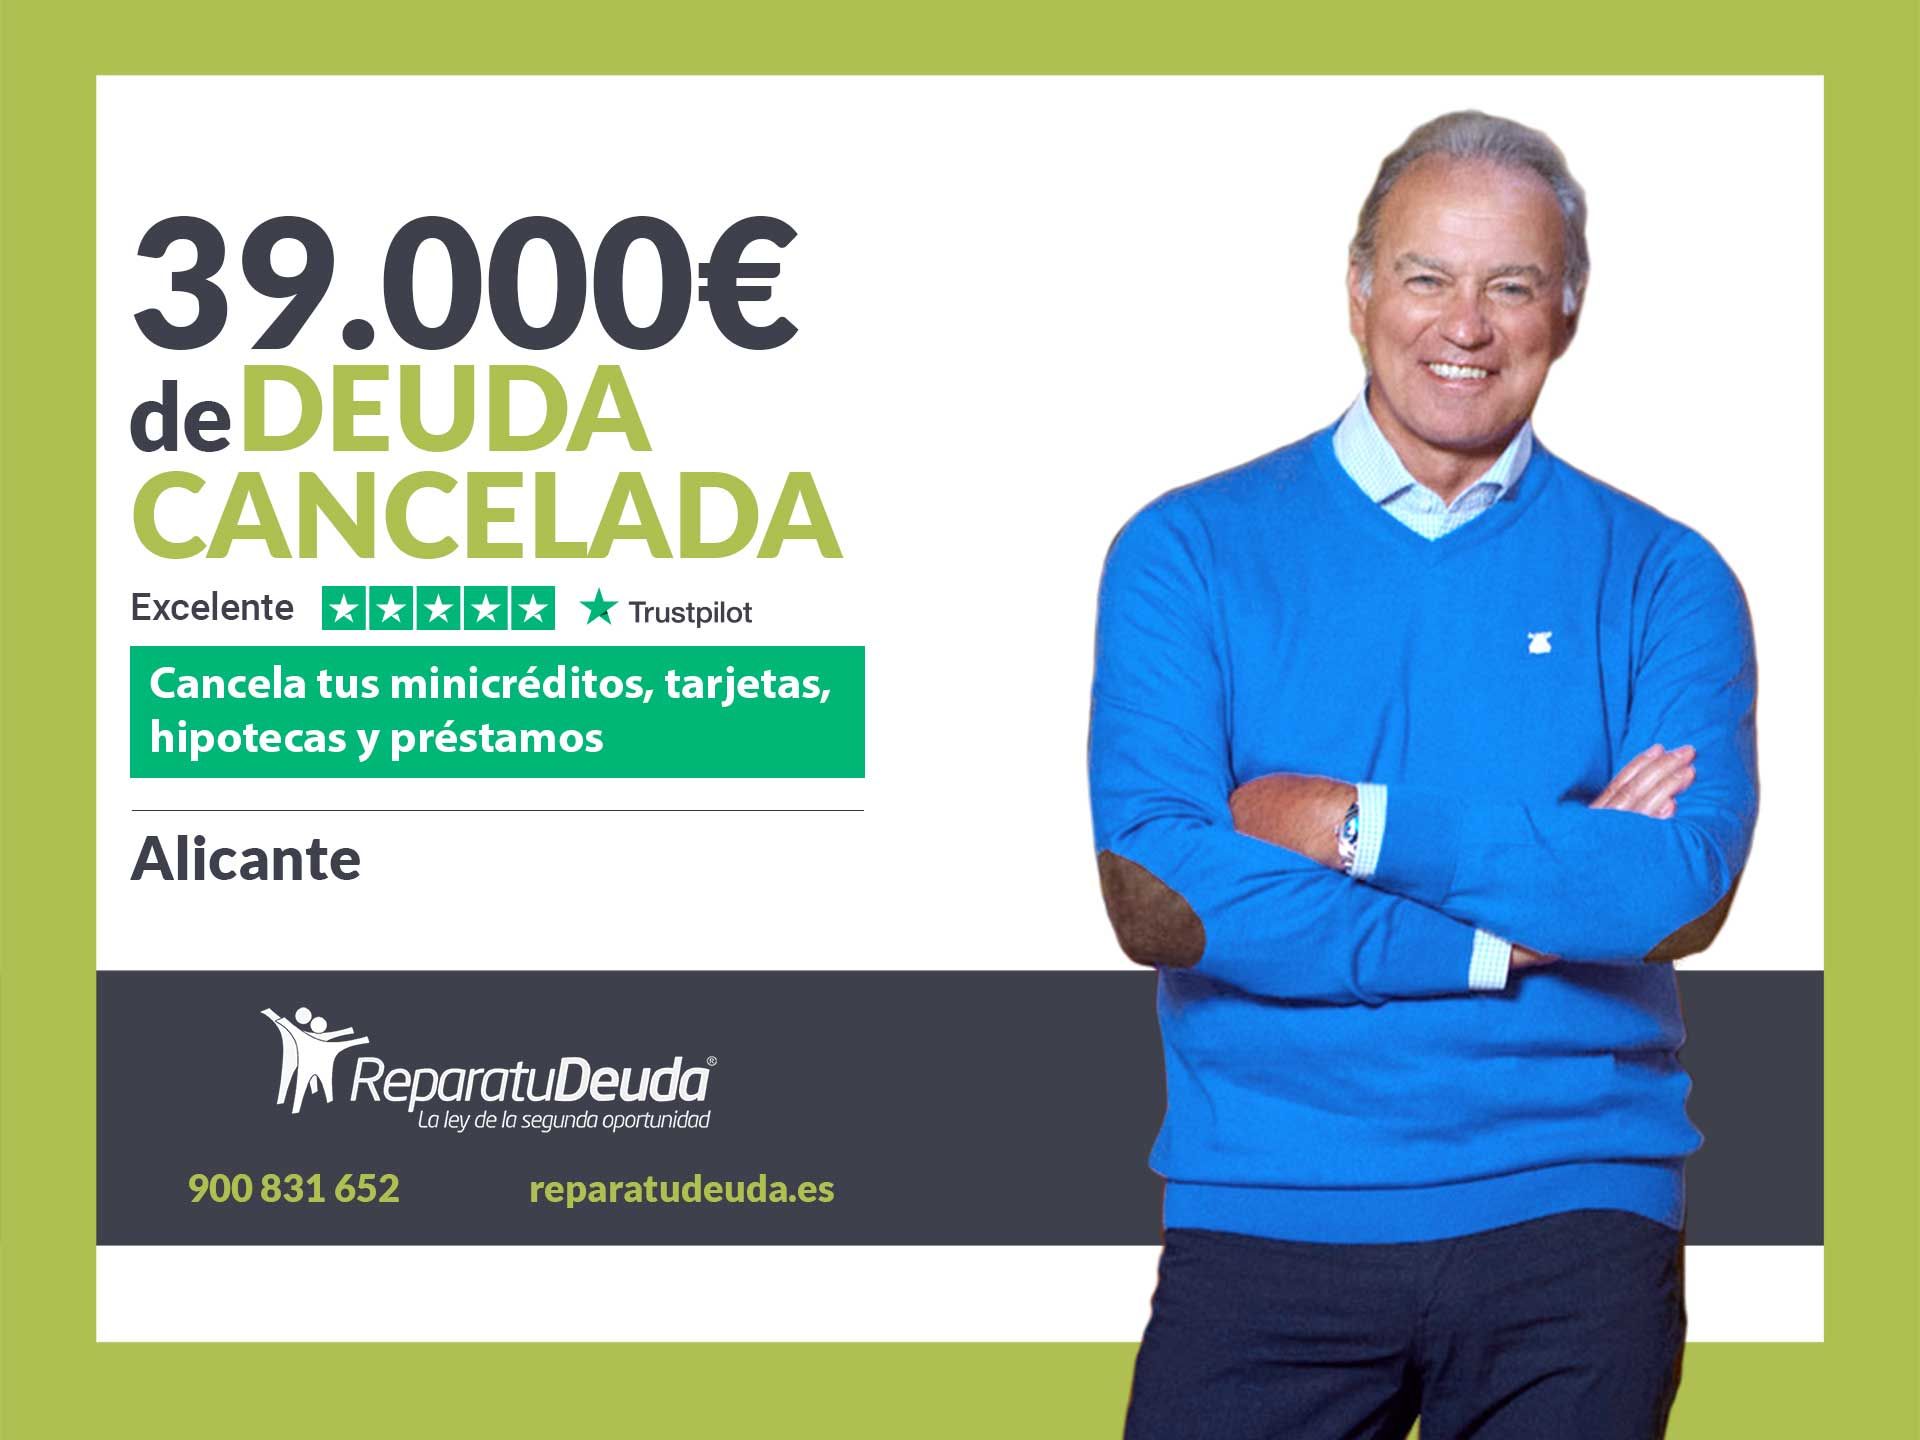 Repara tu Deuda Abogados cancela 39.000? en Alicante (C. Valenciana) con la Ley de Segunda Oportunidad